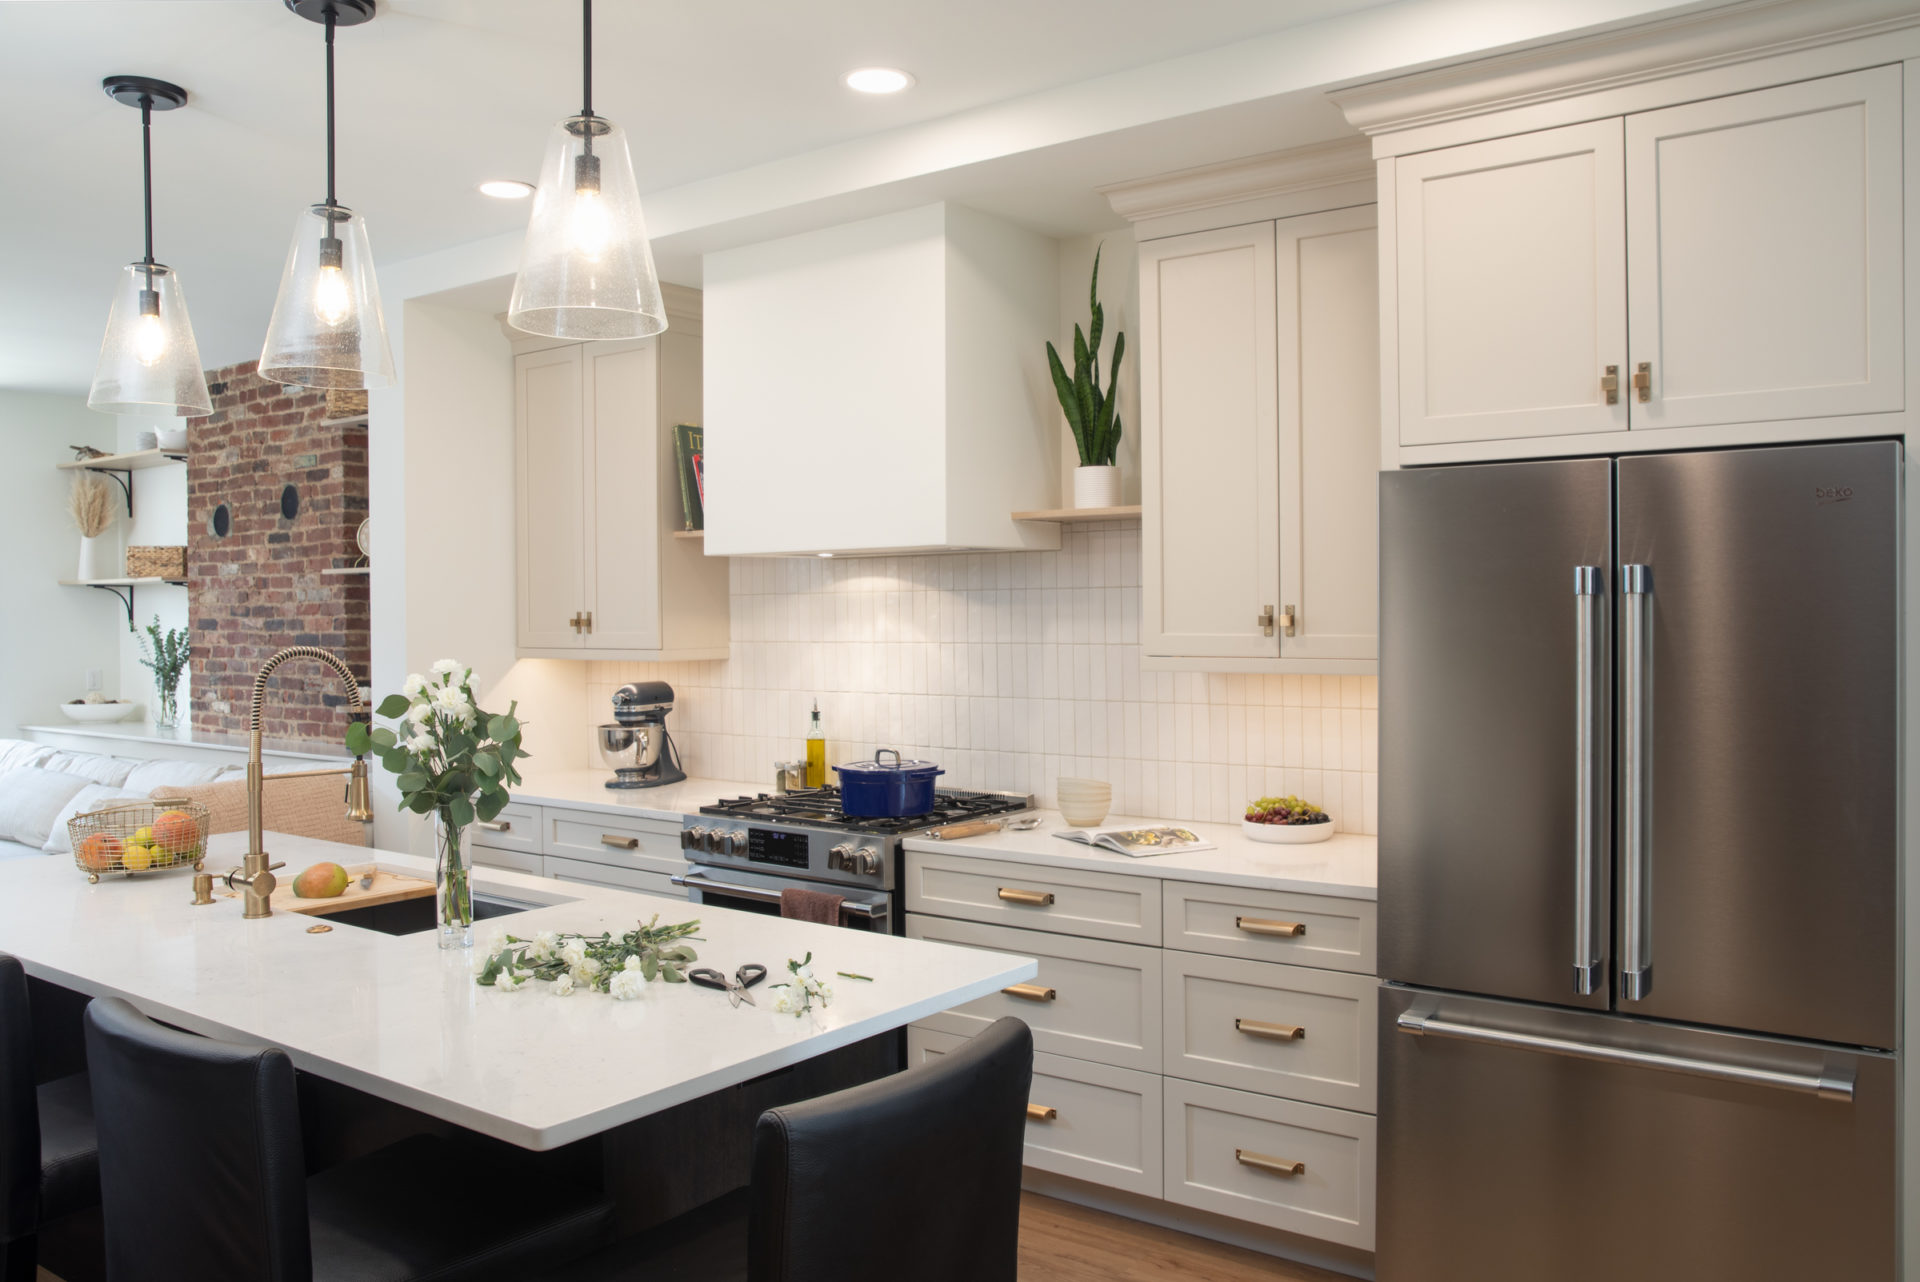 Remodeled kitchen with white cabinets, black island, white quartz countertops, white tile backsplash.